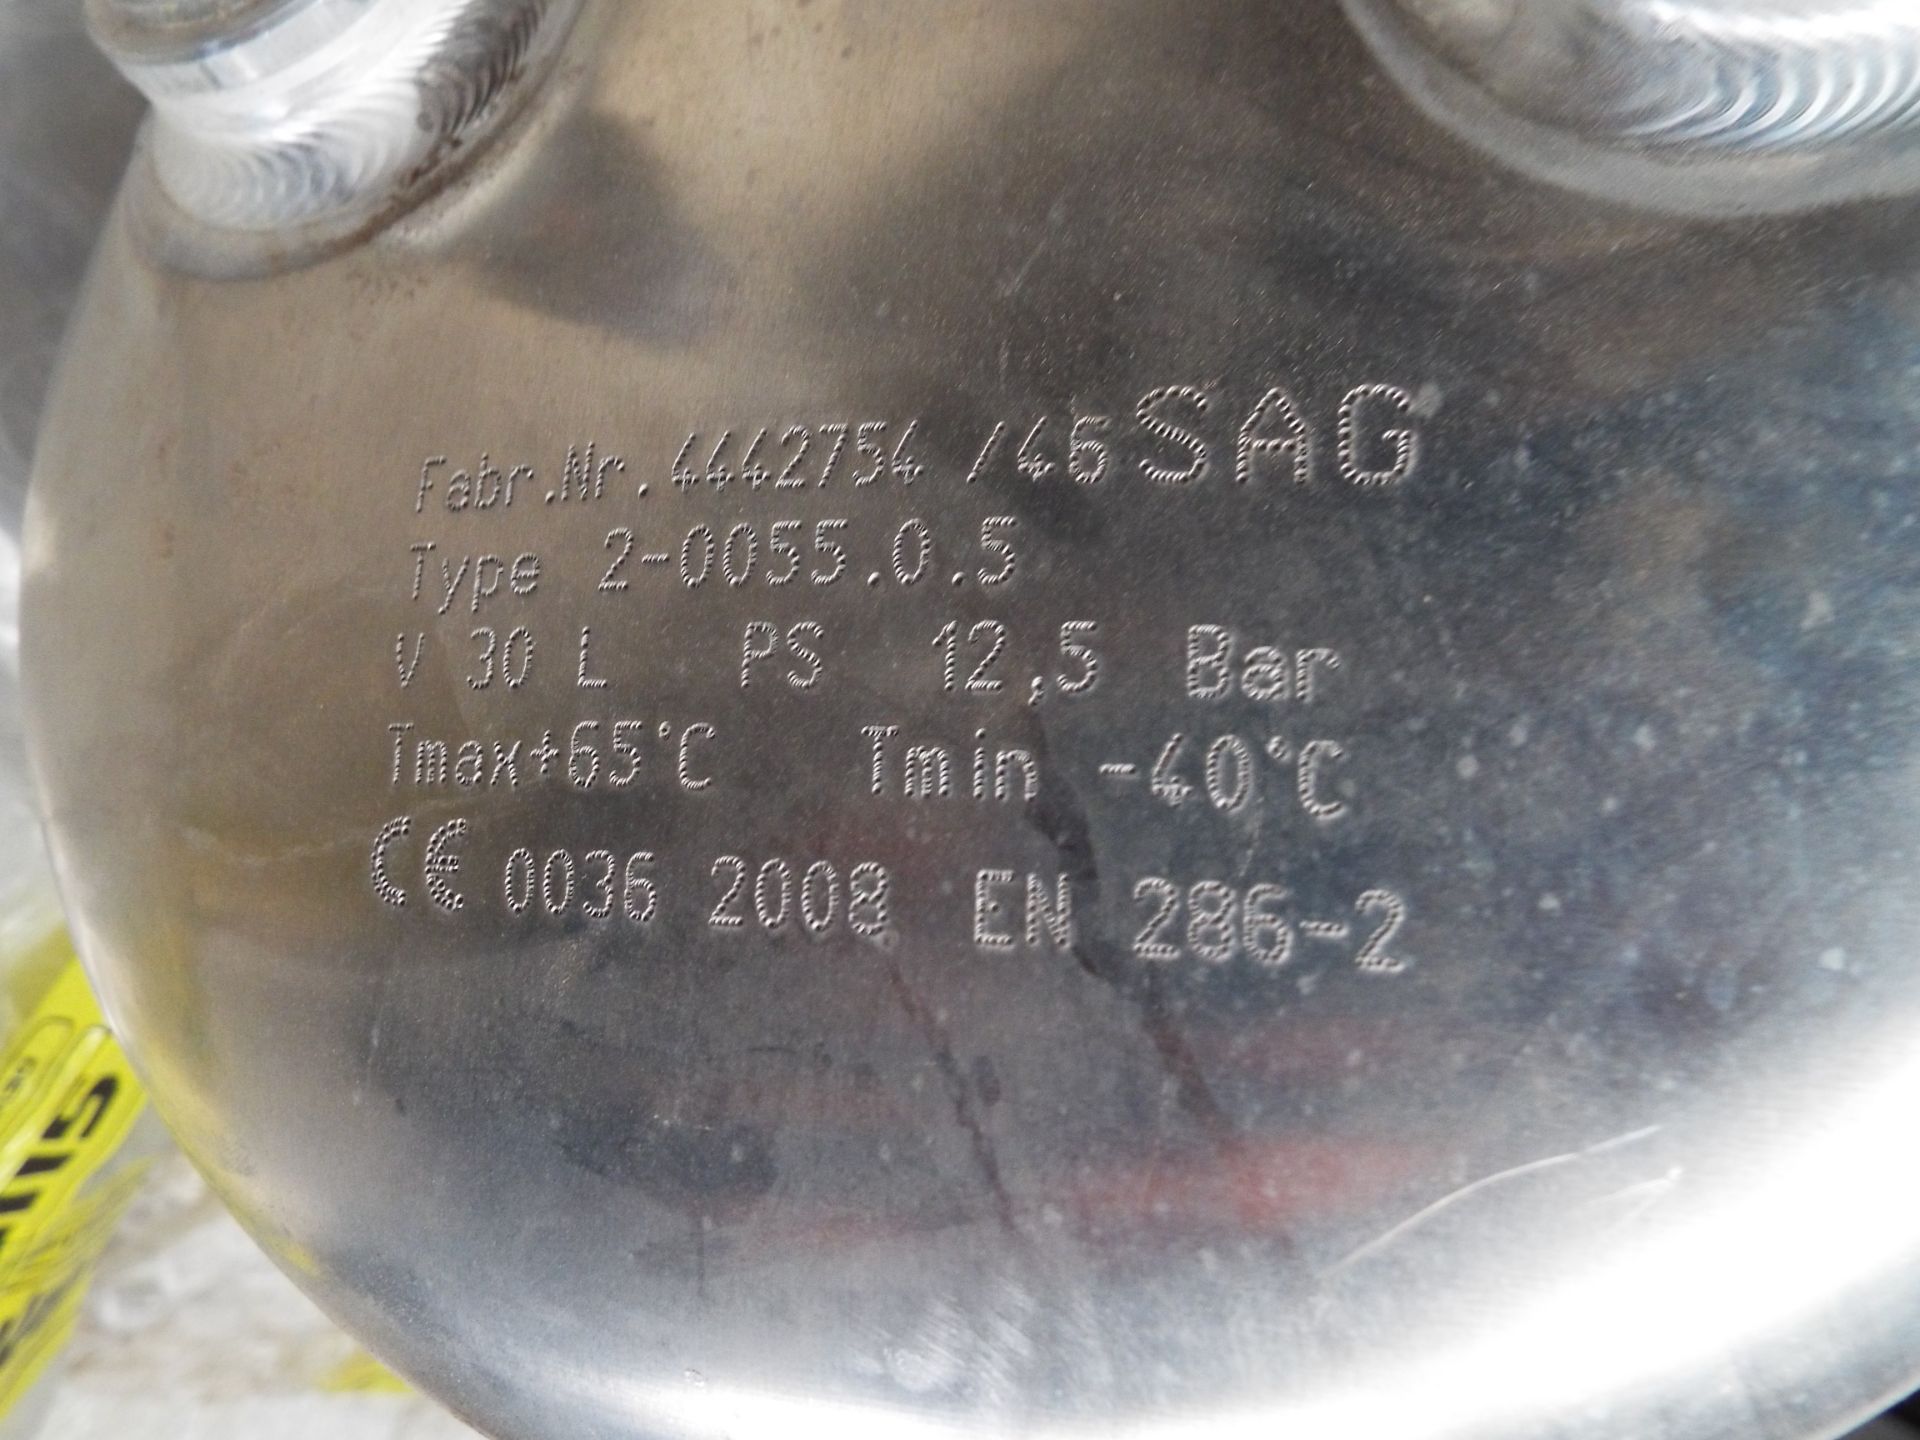 14 x Supacat High Pressure Air Tanks - Image 6 of 8